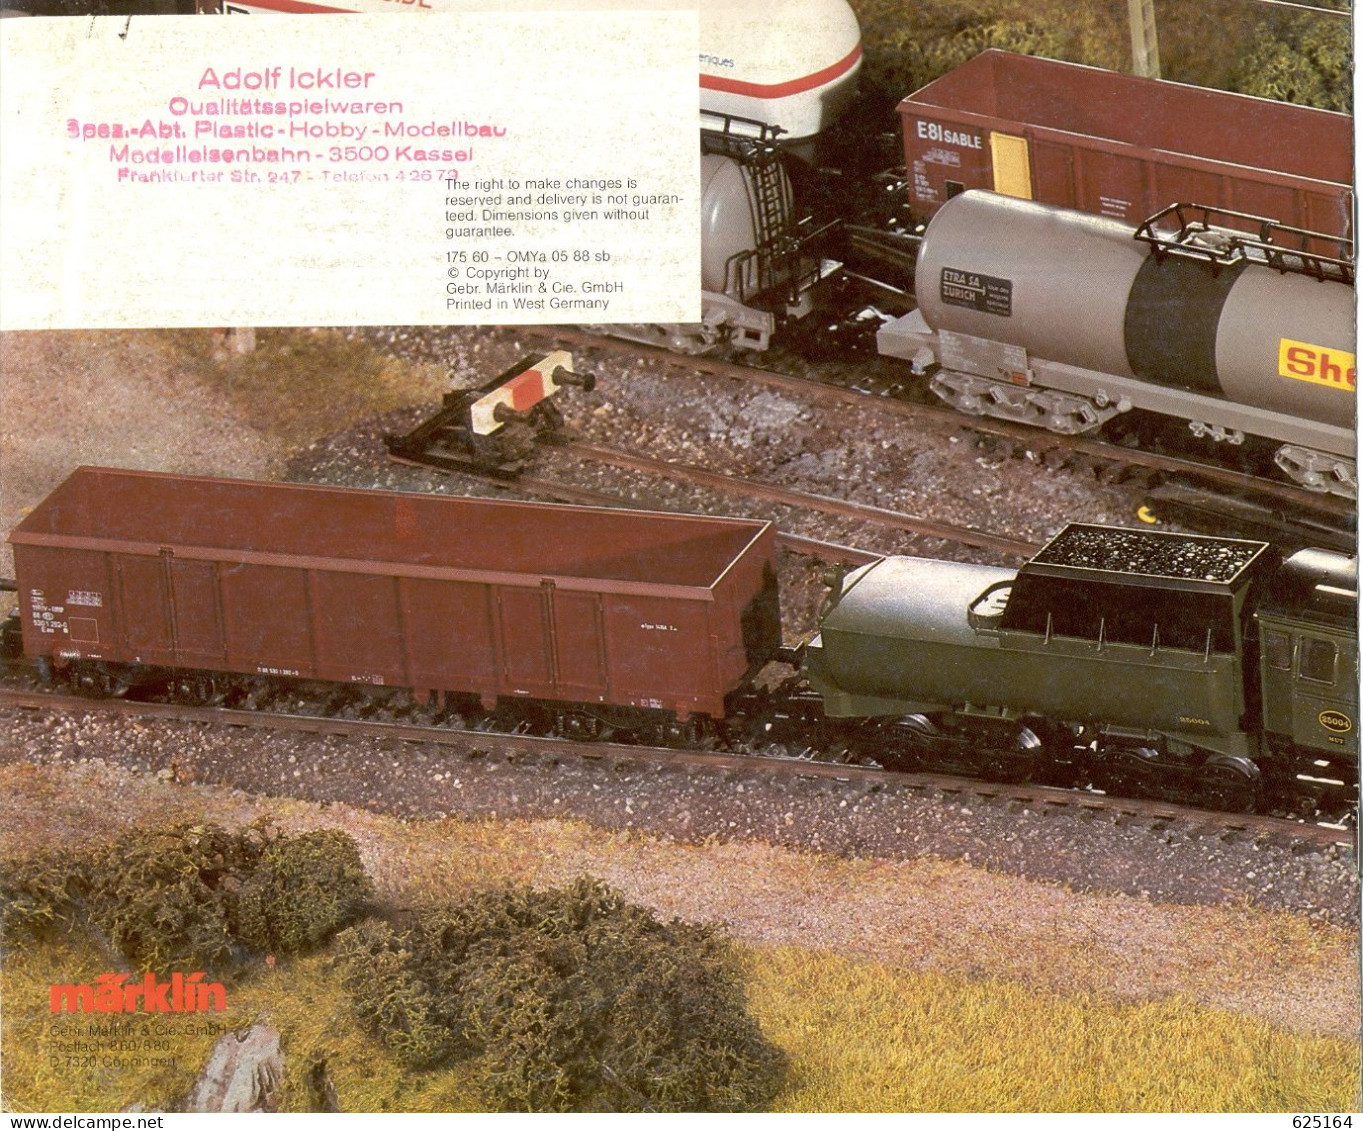 CatalogueMärklin 1988/89 Export Modelle Maquettes Exportation - En Allemand, Anglais Et Français - French